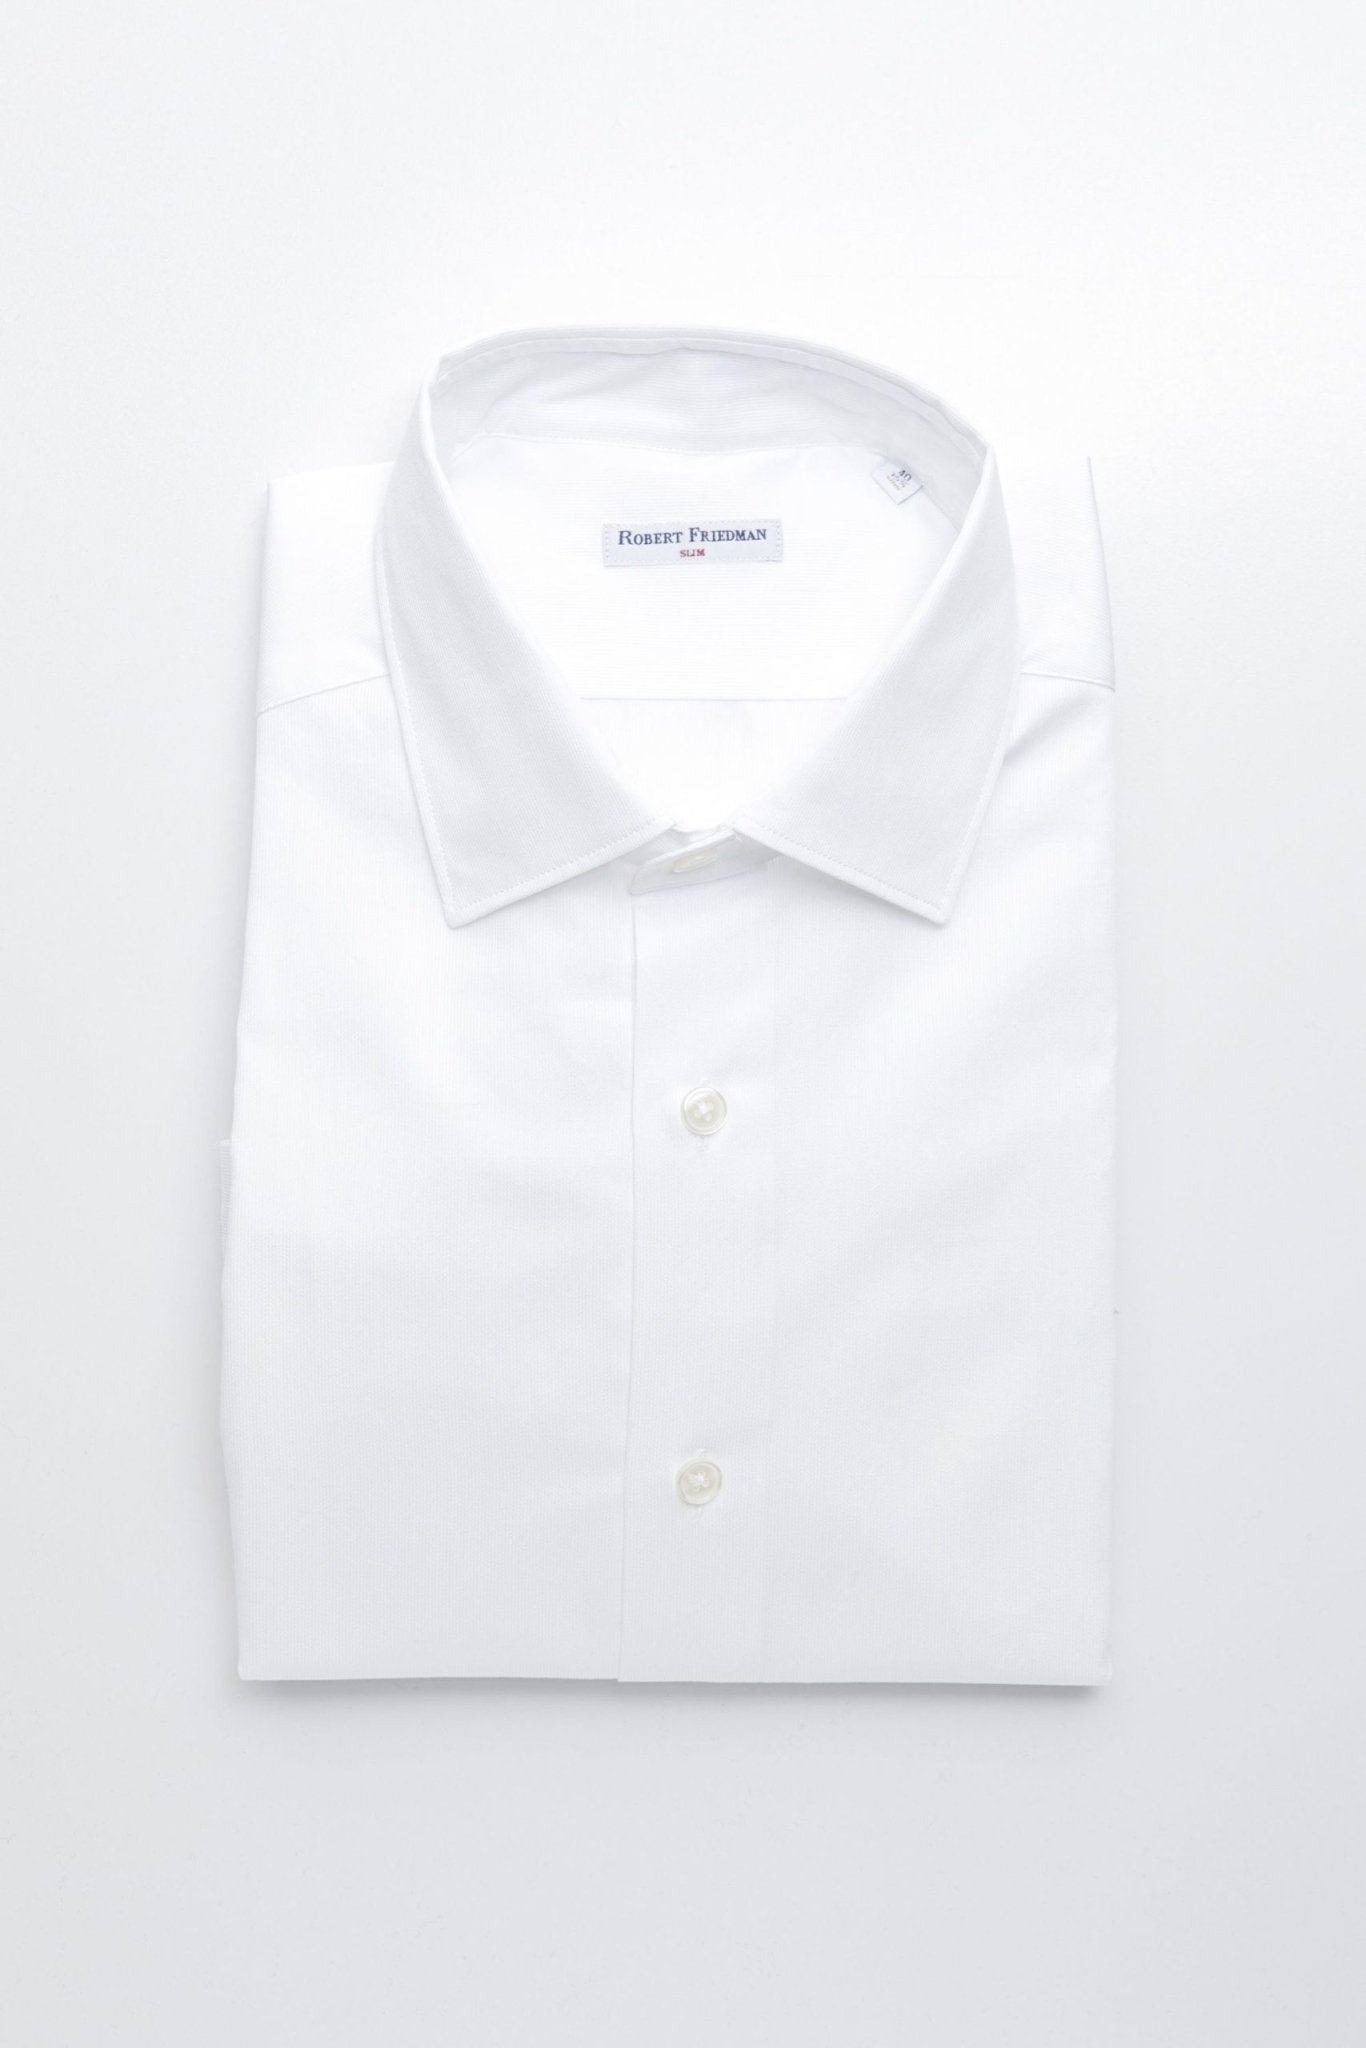 Robert Friedman White Cotton Shirt - Fizigo